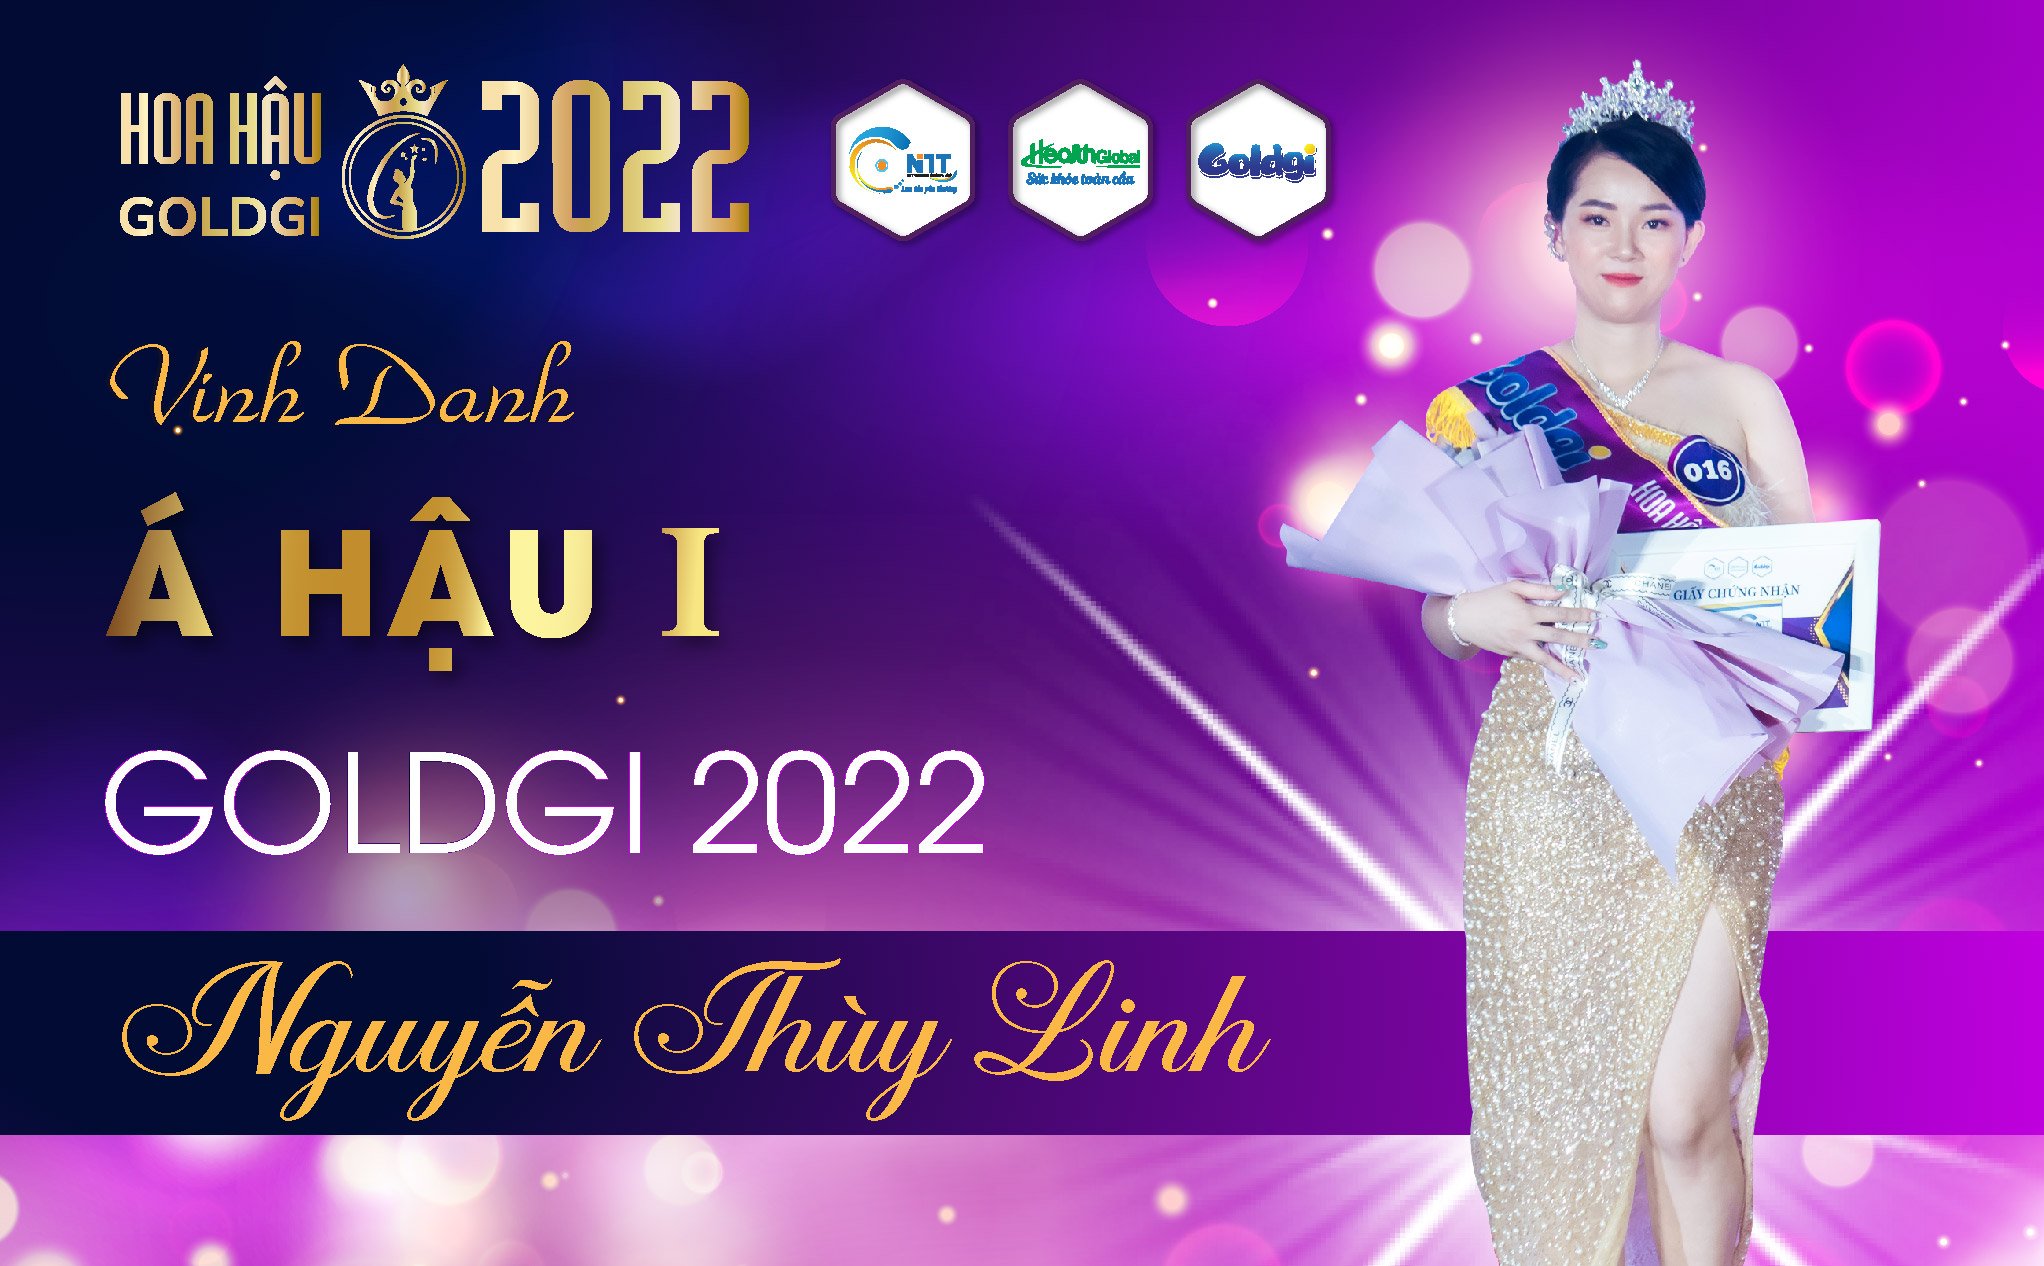 Á hậu 1 Goldgi 2022 gọi tên chị Nguyễn Thùy Linh - đại diện Bitimart Thanh Hóa